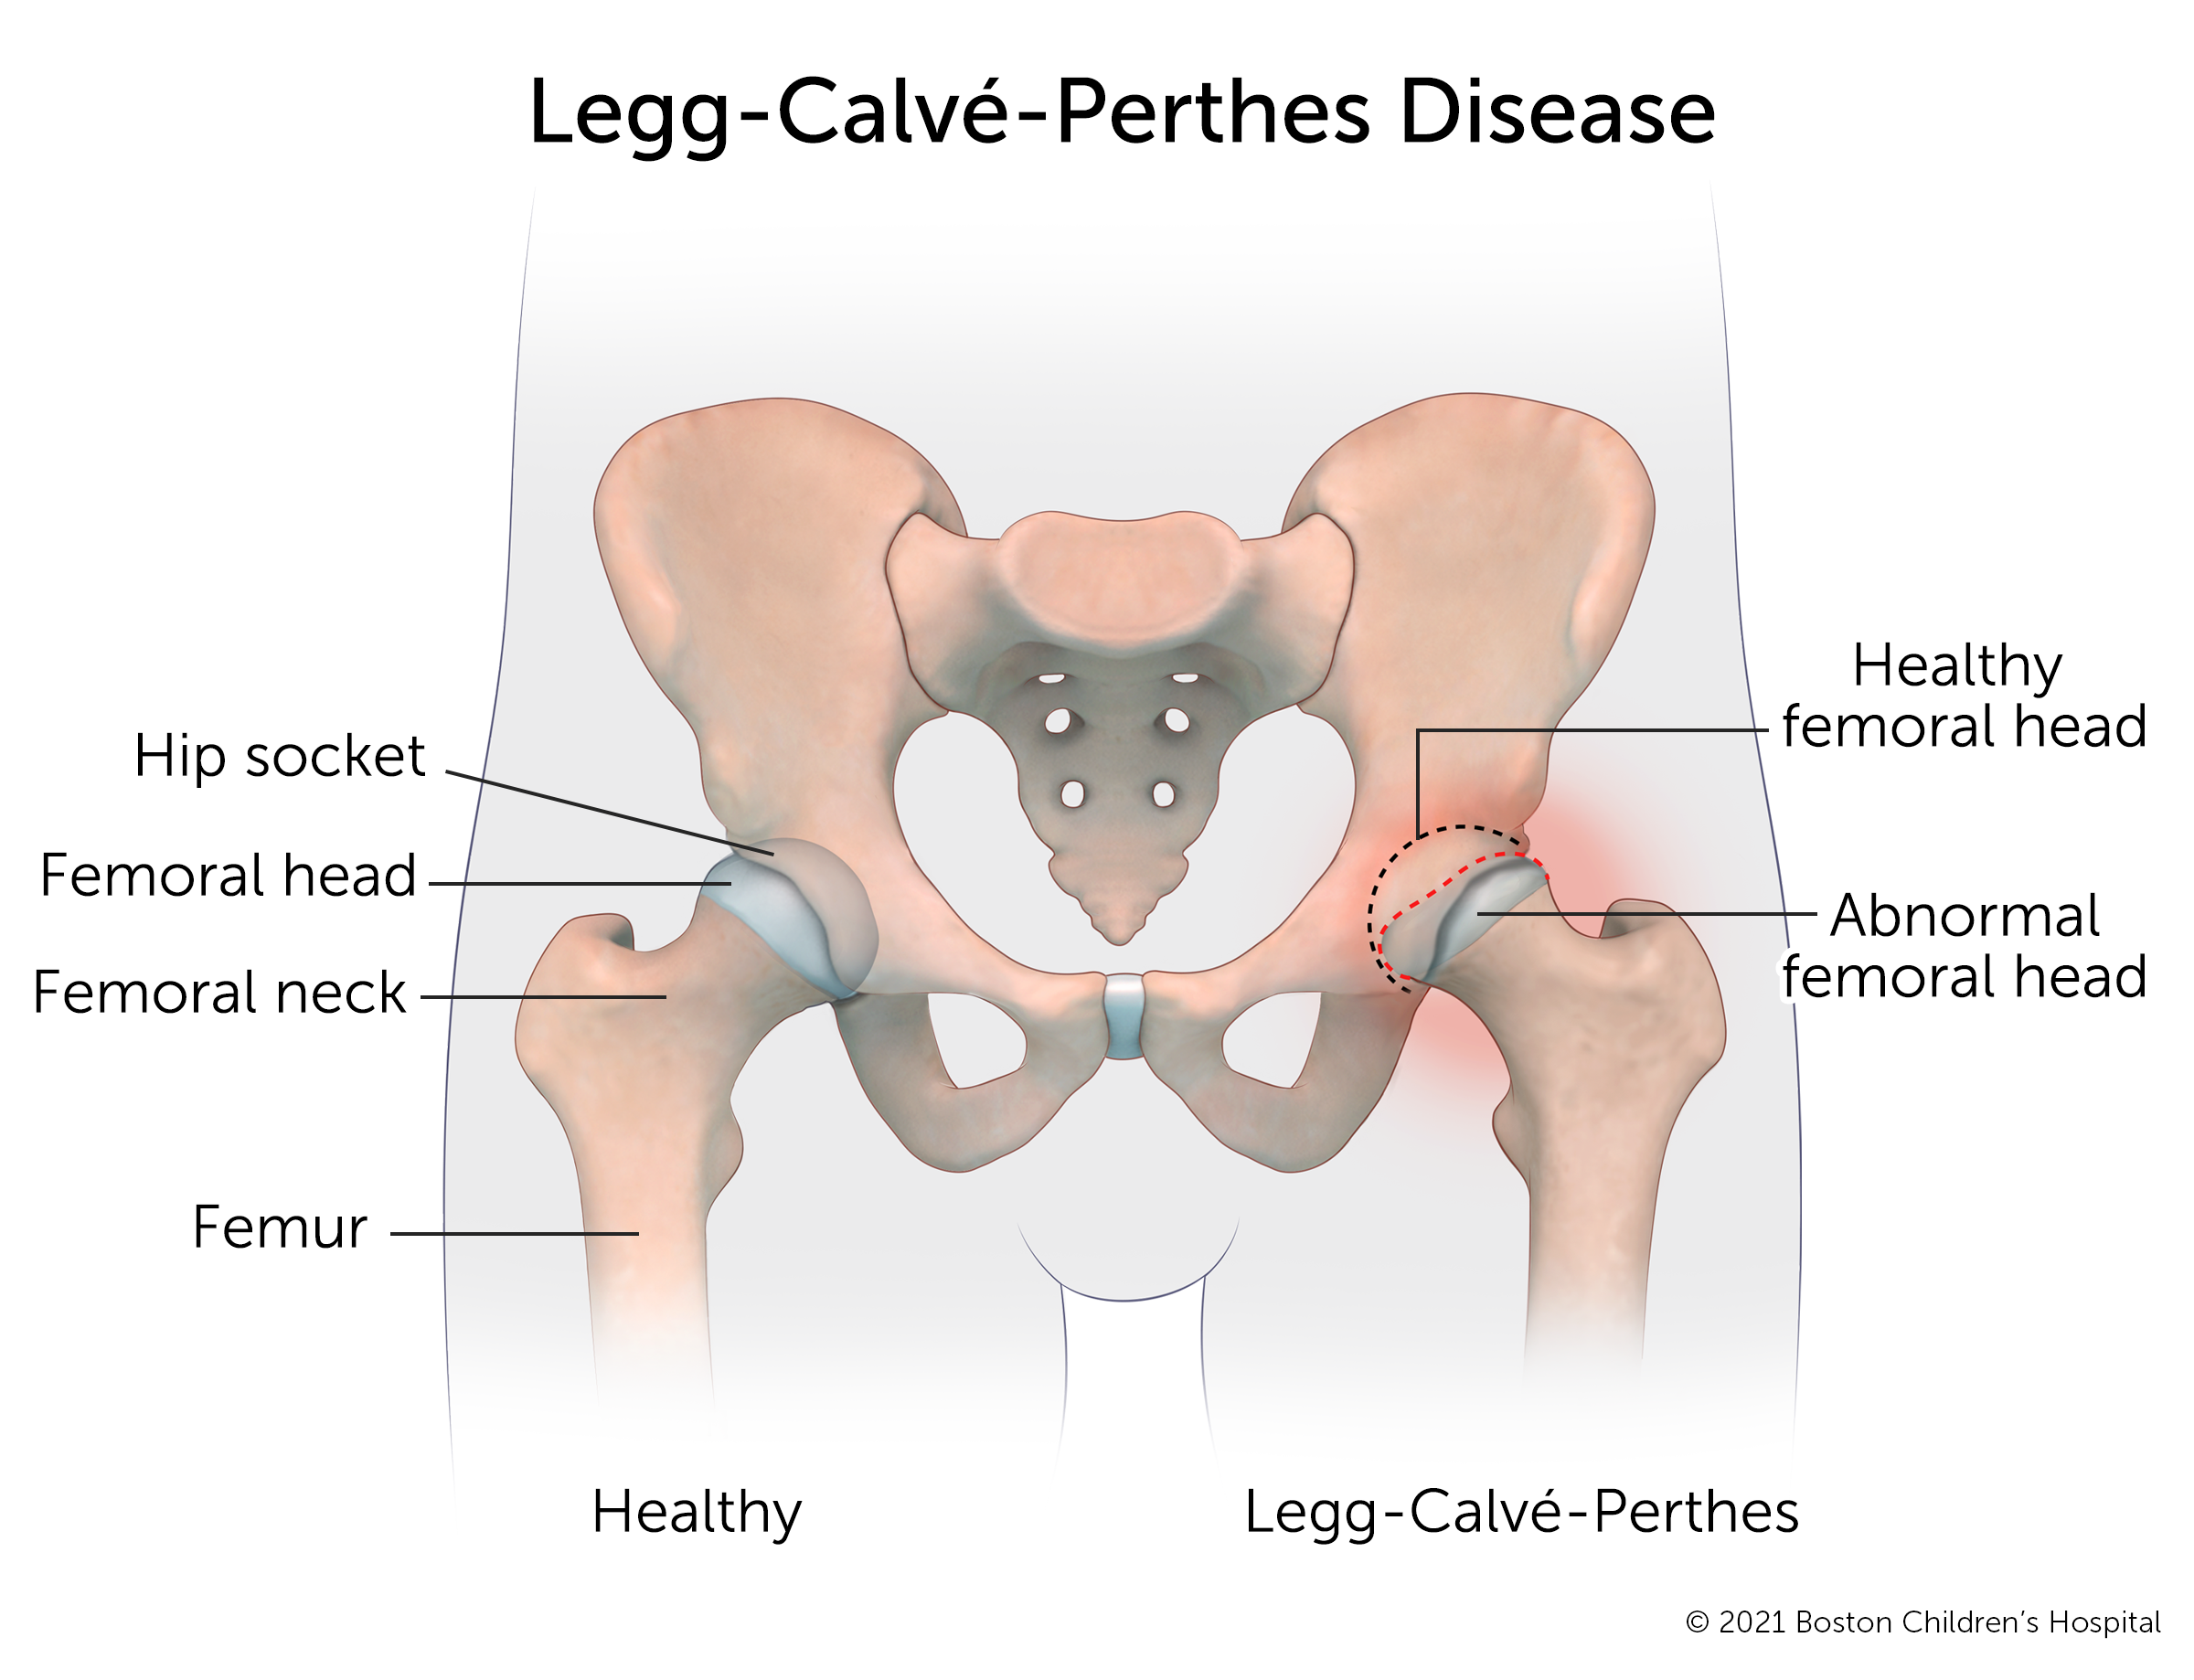 一个健康的髋关节与一个患有小腿雷公病的髋关节相比。在健康的髋关节中，股骨头是圆的，并且安全地嵌入髋臼。在髋关节的Perthes病中，股骨头已经变平，在臼腔中有一个空腔袋。周围区域红肿。